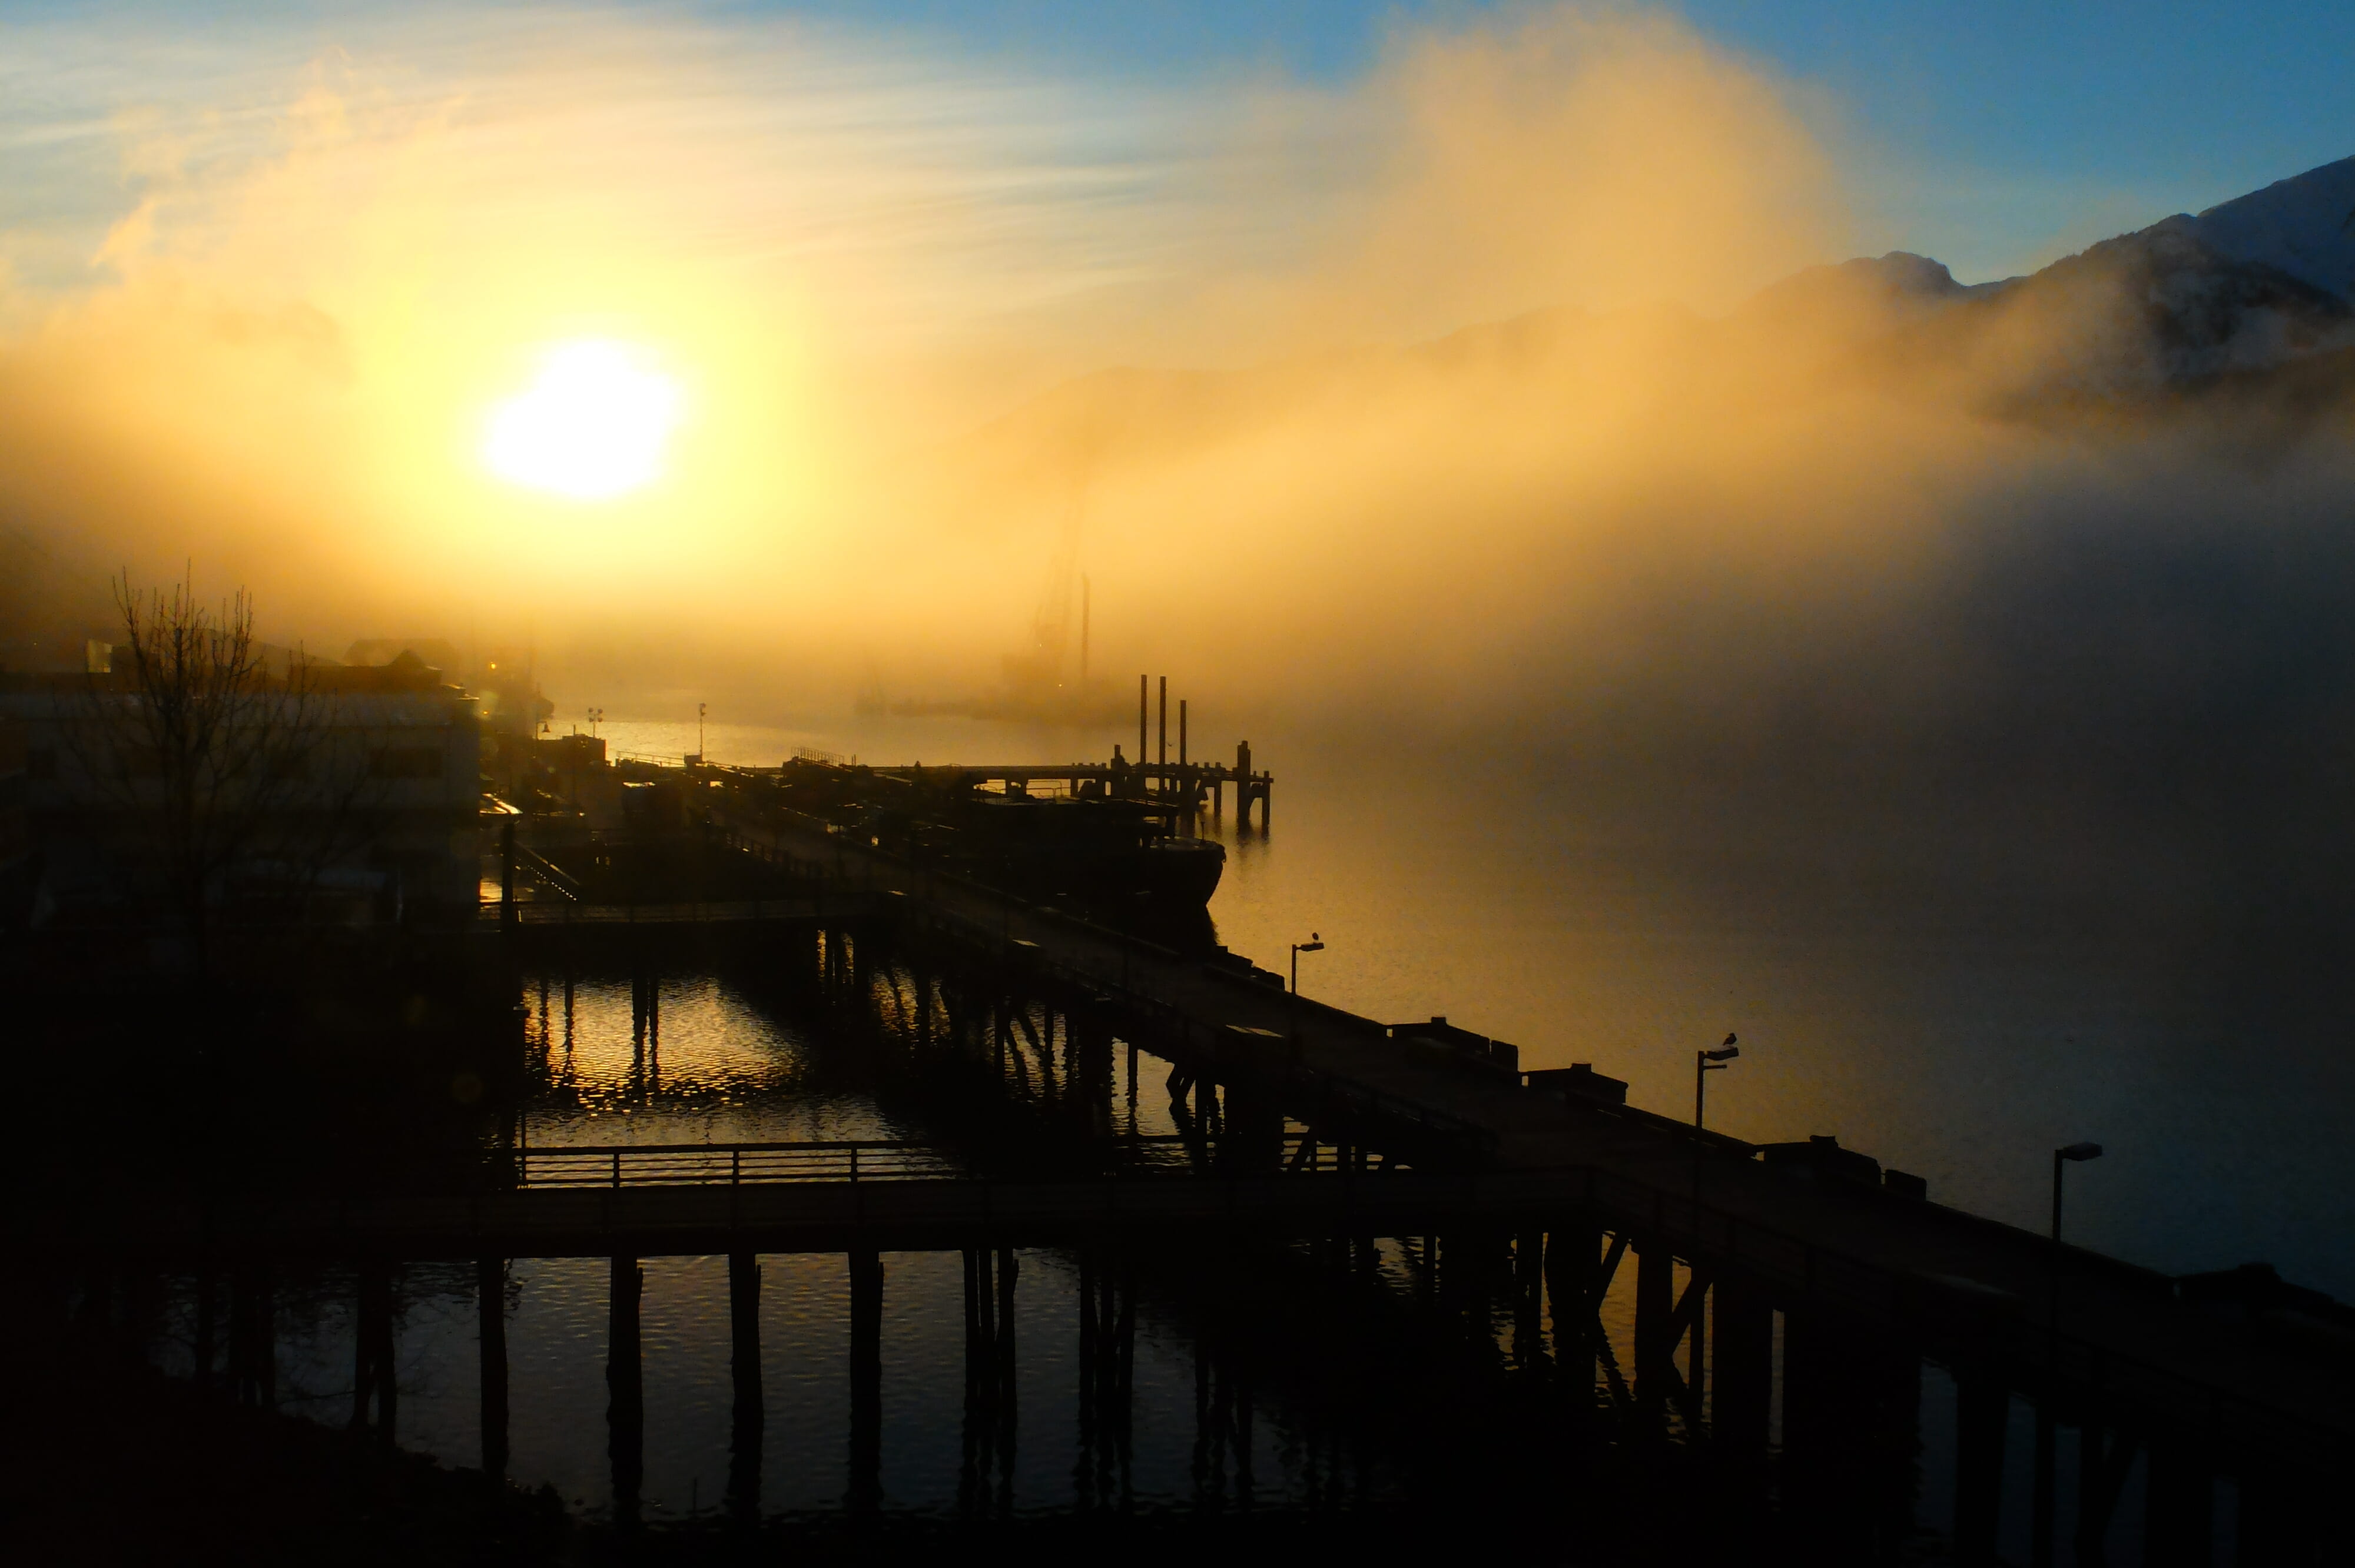 Foggy sunrise on the seawalk